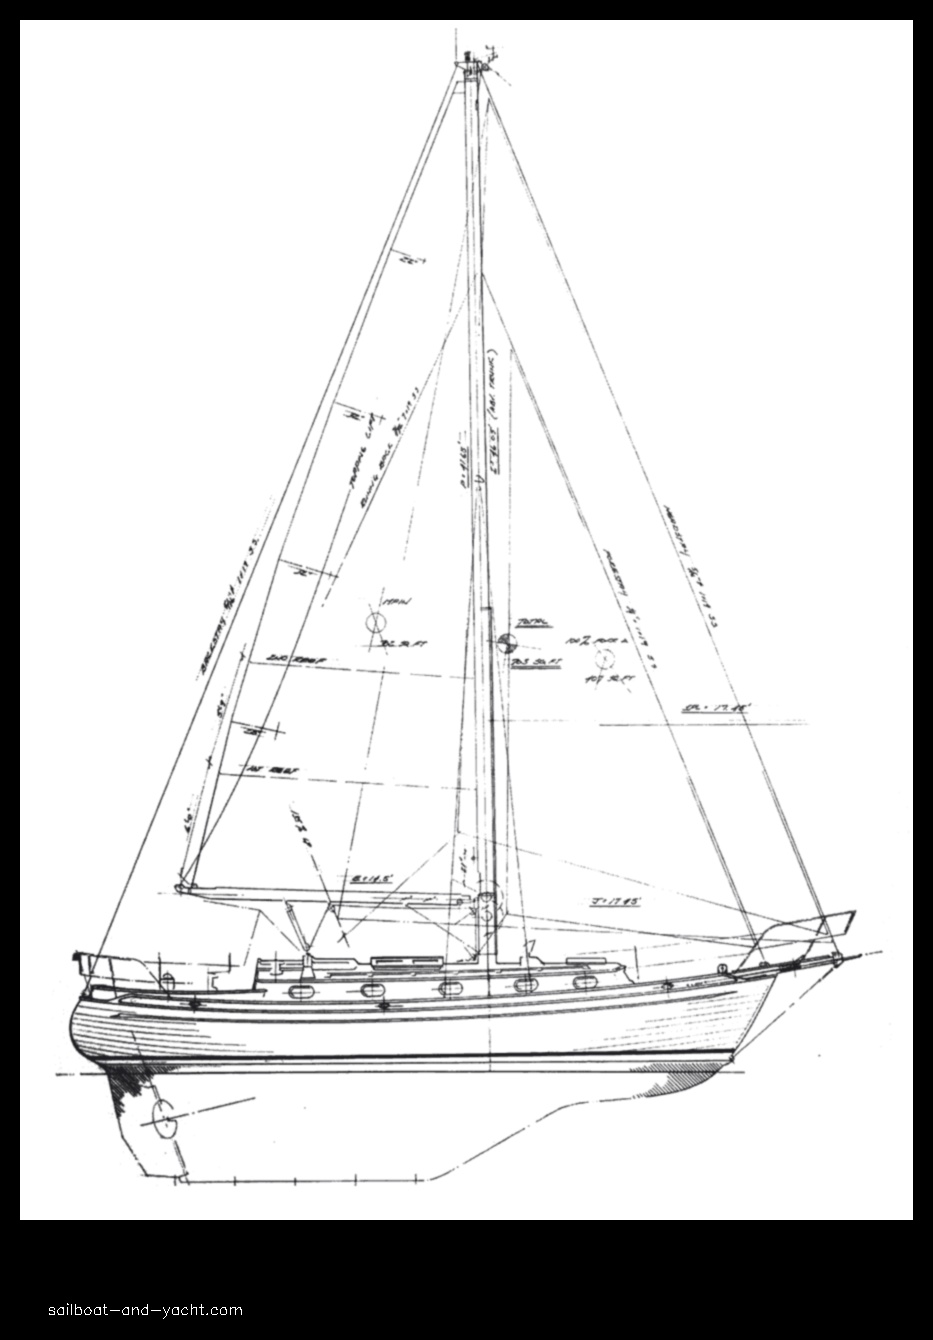 tashiba 36 sailboat